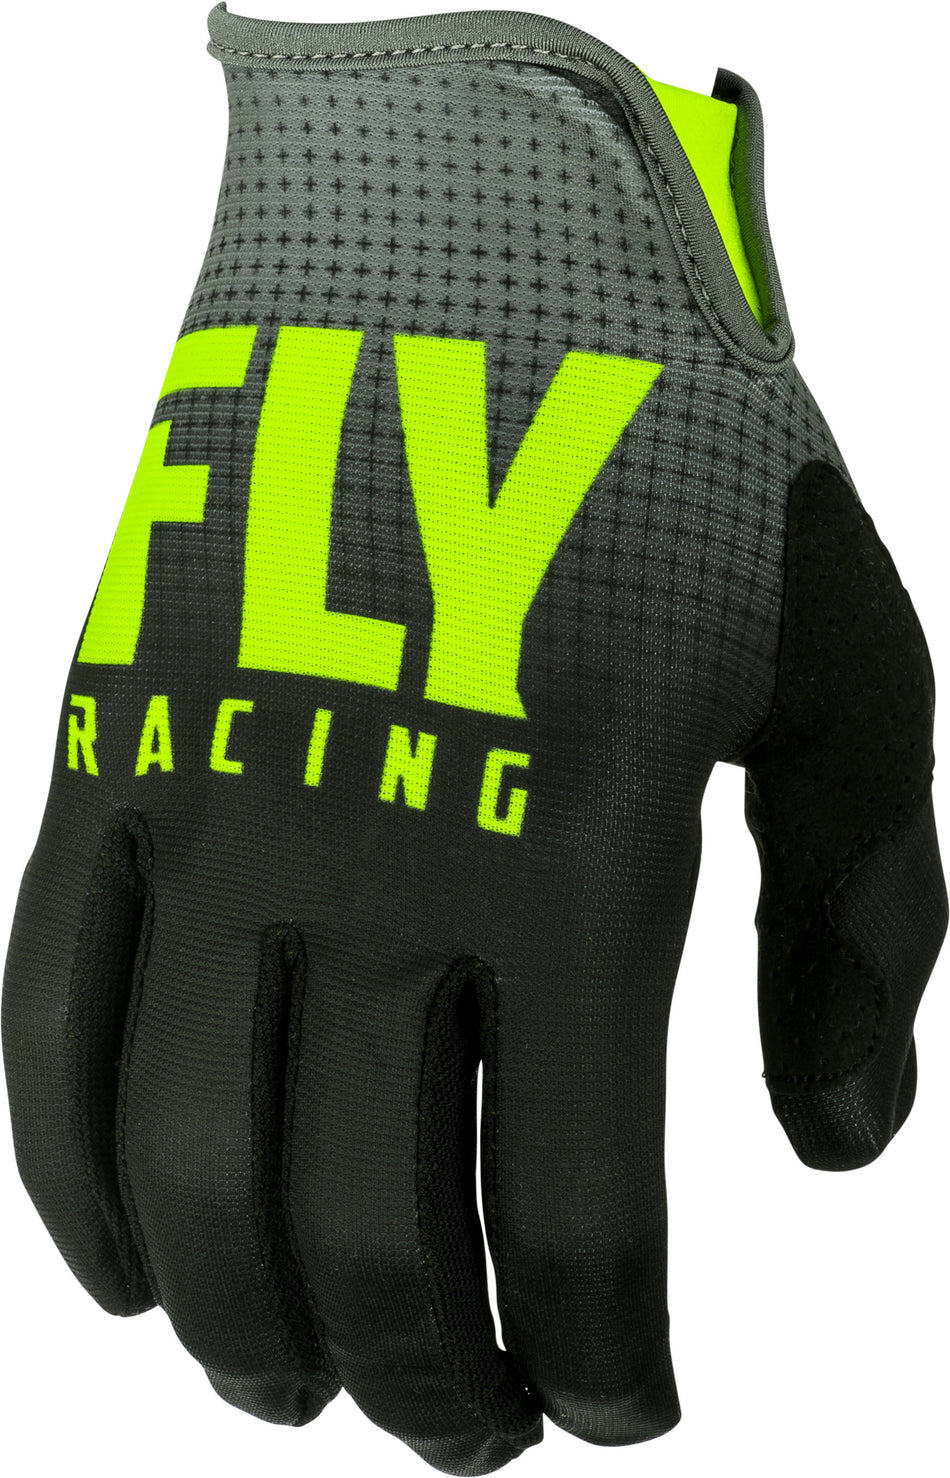 FLY RACING Lite Gloves Black/Hi-Vis Sz 11 372-01011